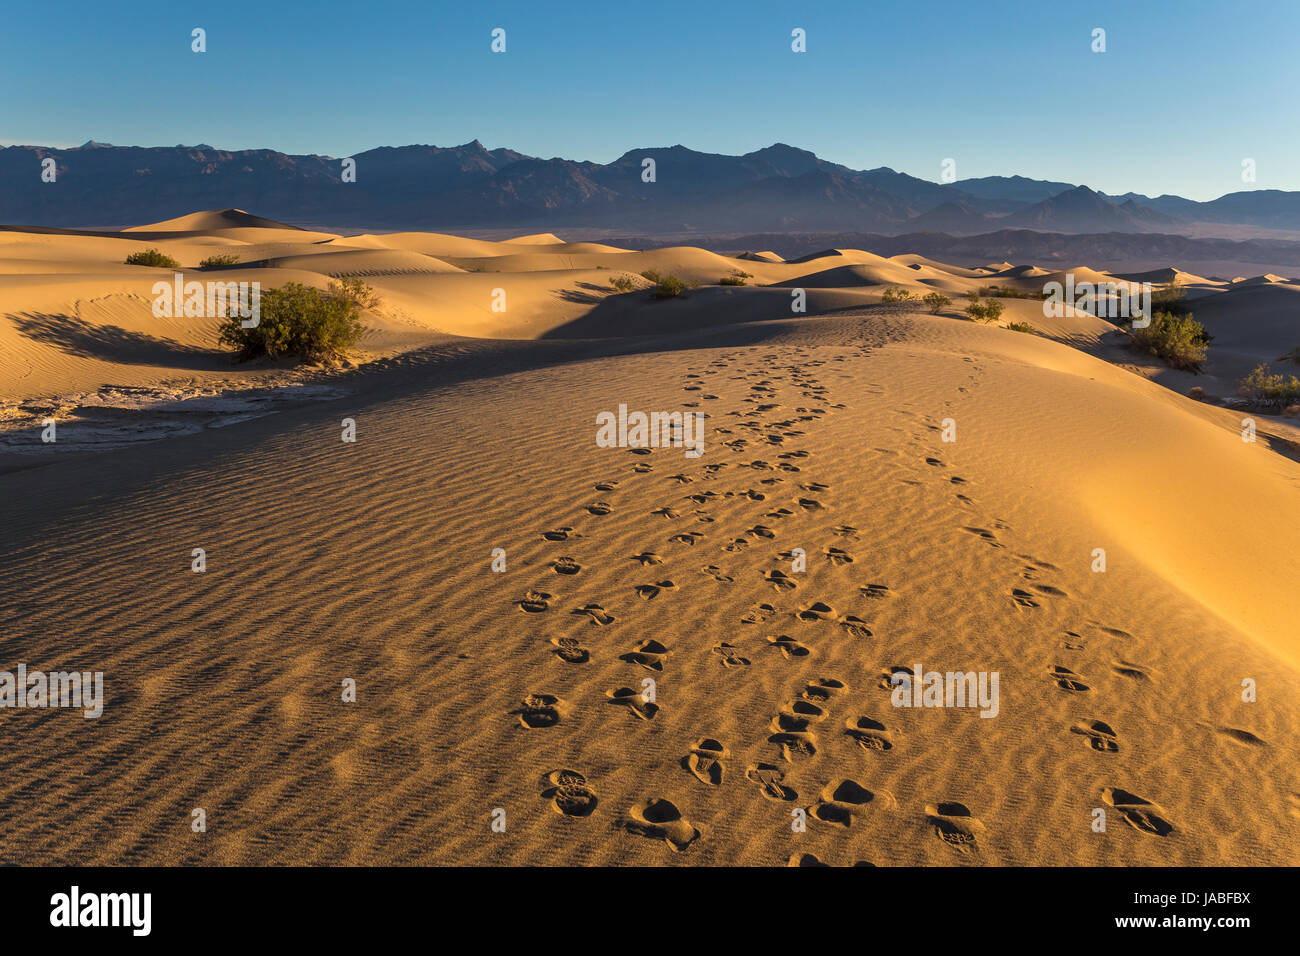 Des traces de pas dans le sable, sunrise, Mesquite Flat dunes de sable, Death Valley National Park, Death Valley, Californie Banque D'Images